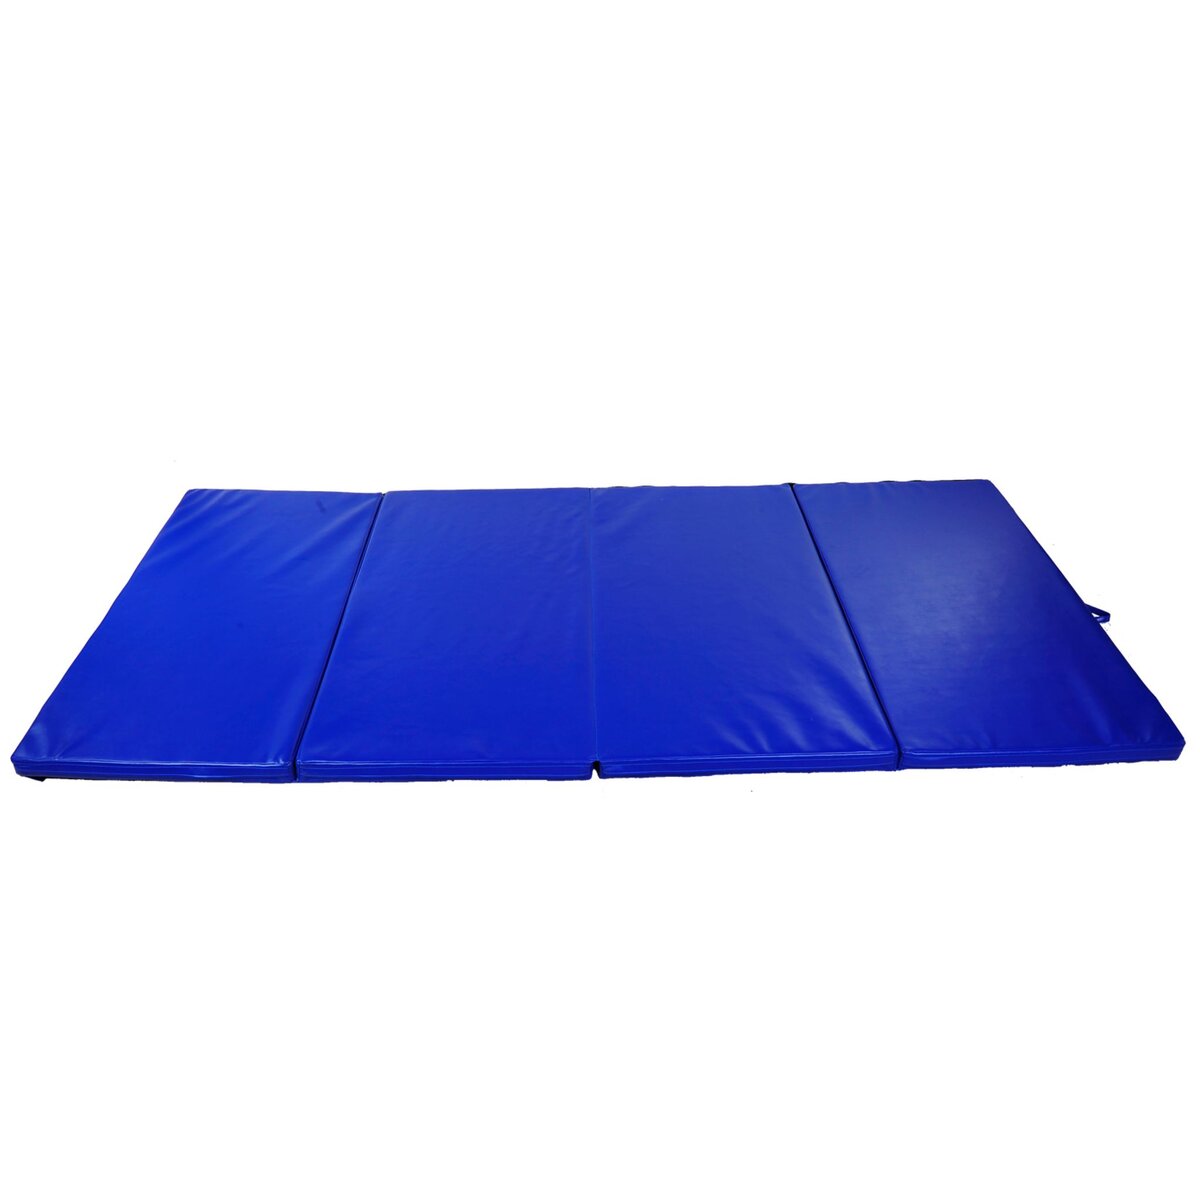 HOMCOM Tapis de sol gymnastique Fitness pliable portable rembourrage mousse  5 cm grand confort revêtement synthétique dim. 2,93L m x 1,15l m bleu pas  cher 